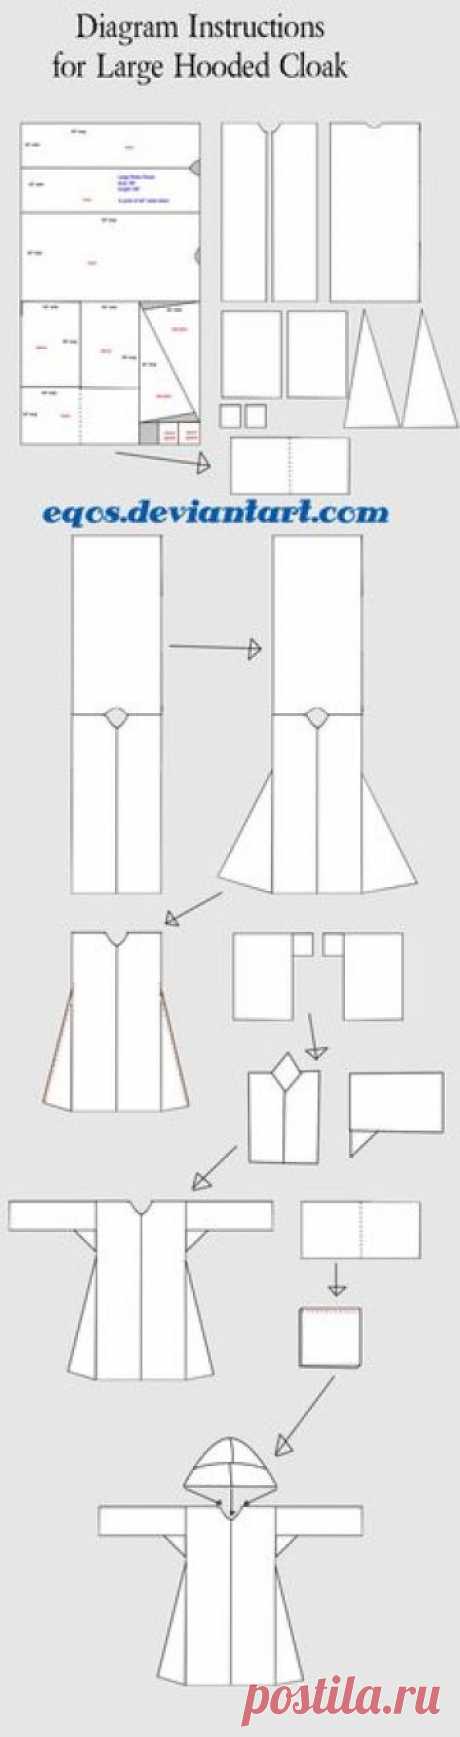 diagram_for_large_hooded_cloak_by_eqos-d3kwkbn.jpg 1,000×3,777 pixels